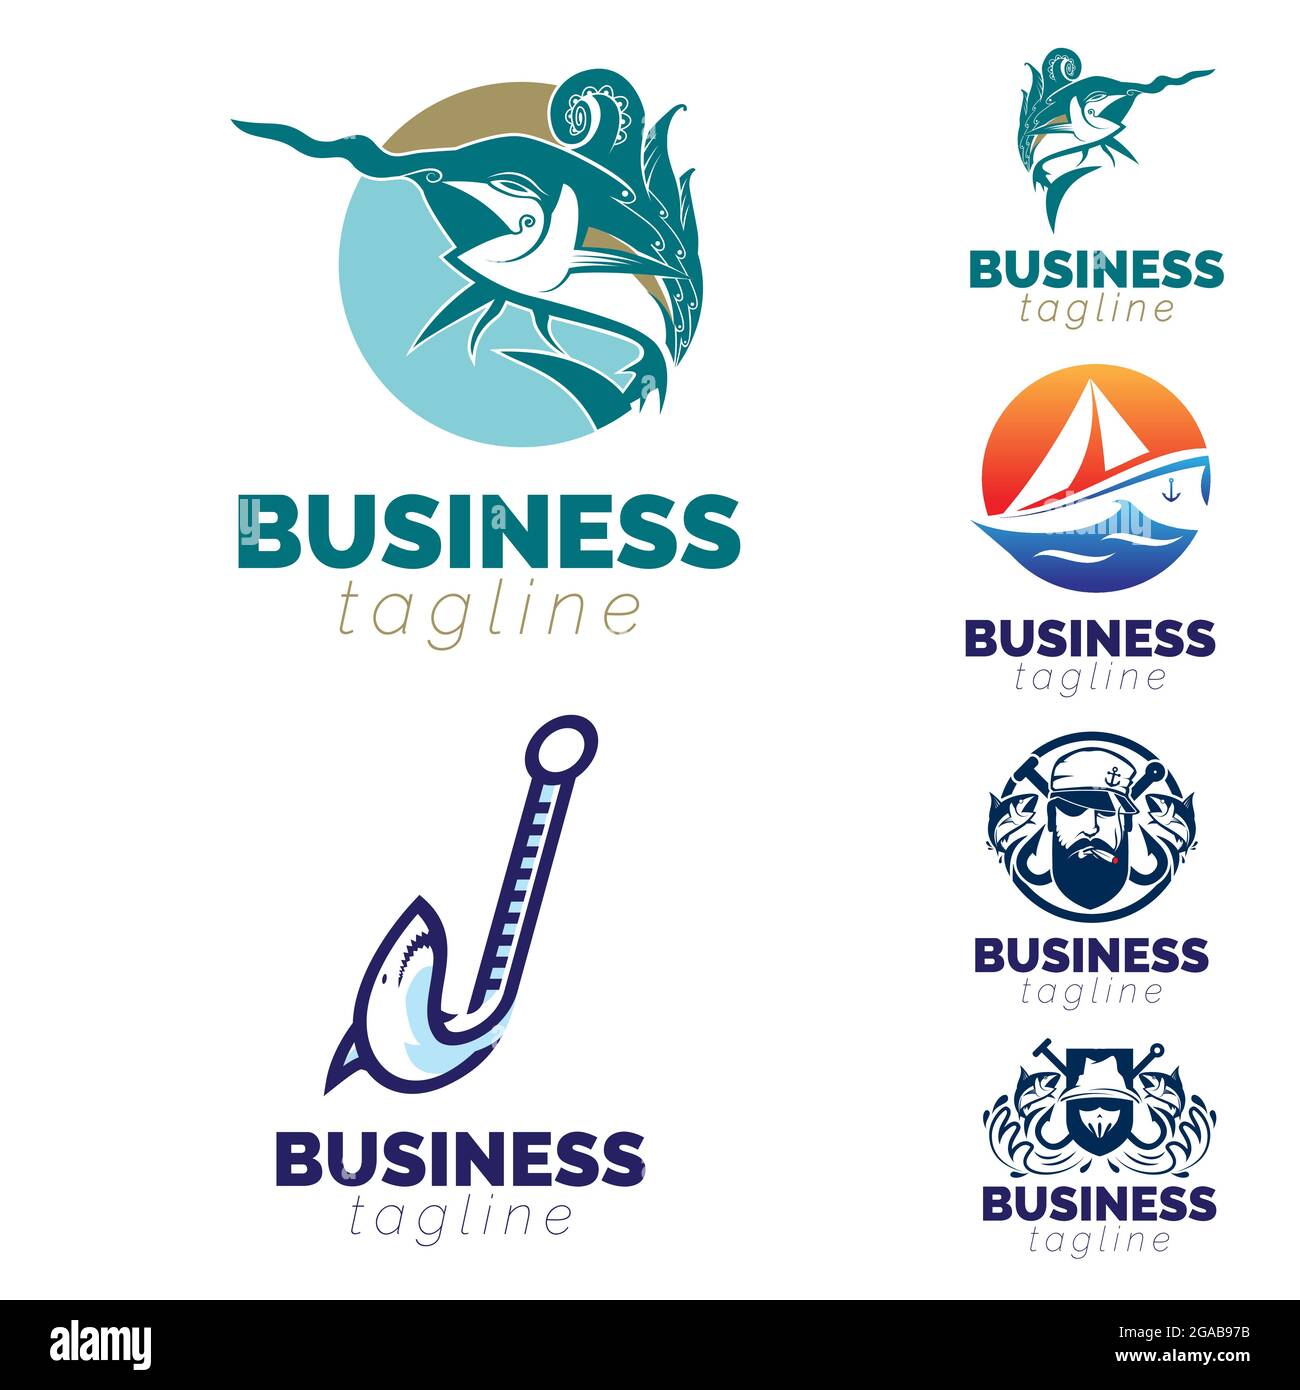 Fishing, Fish and Sail theme logo set. vector Stock Vector